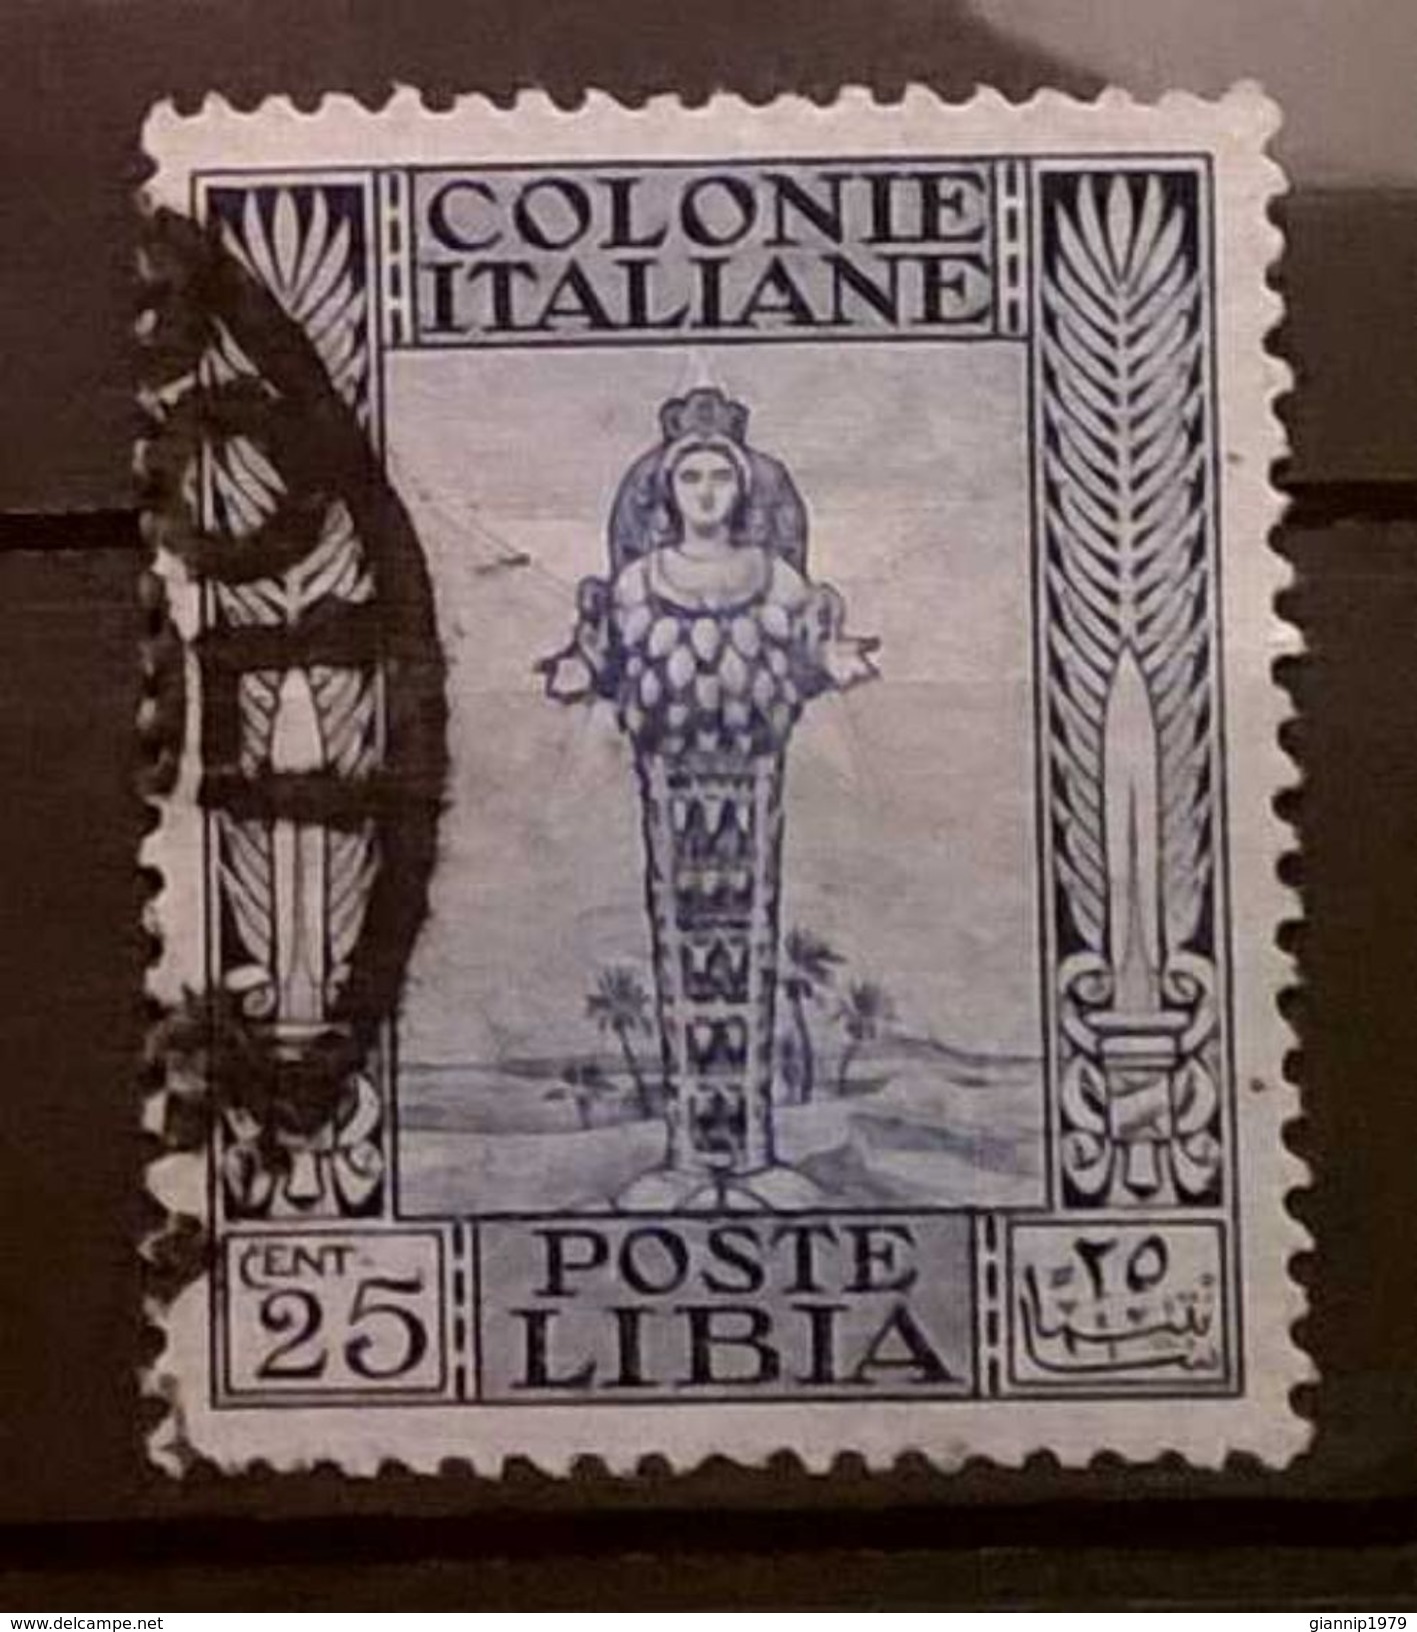 FRANCOBOLLI STAMPS ITALIA ITALY 1921 COLONIA LIBIA SERIE ANTICHE - Libyen